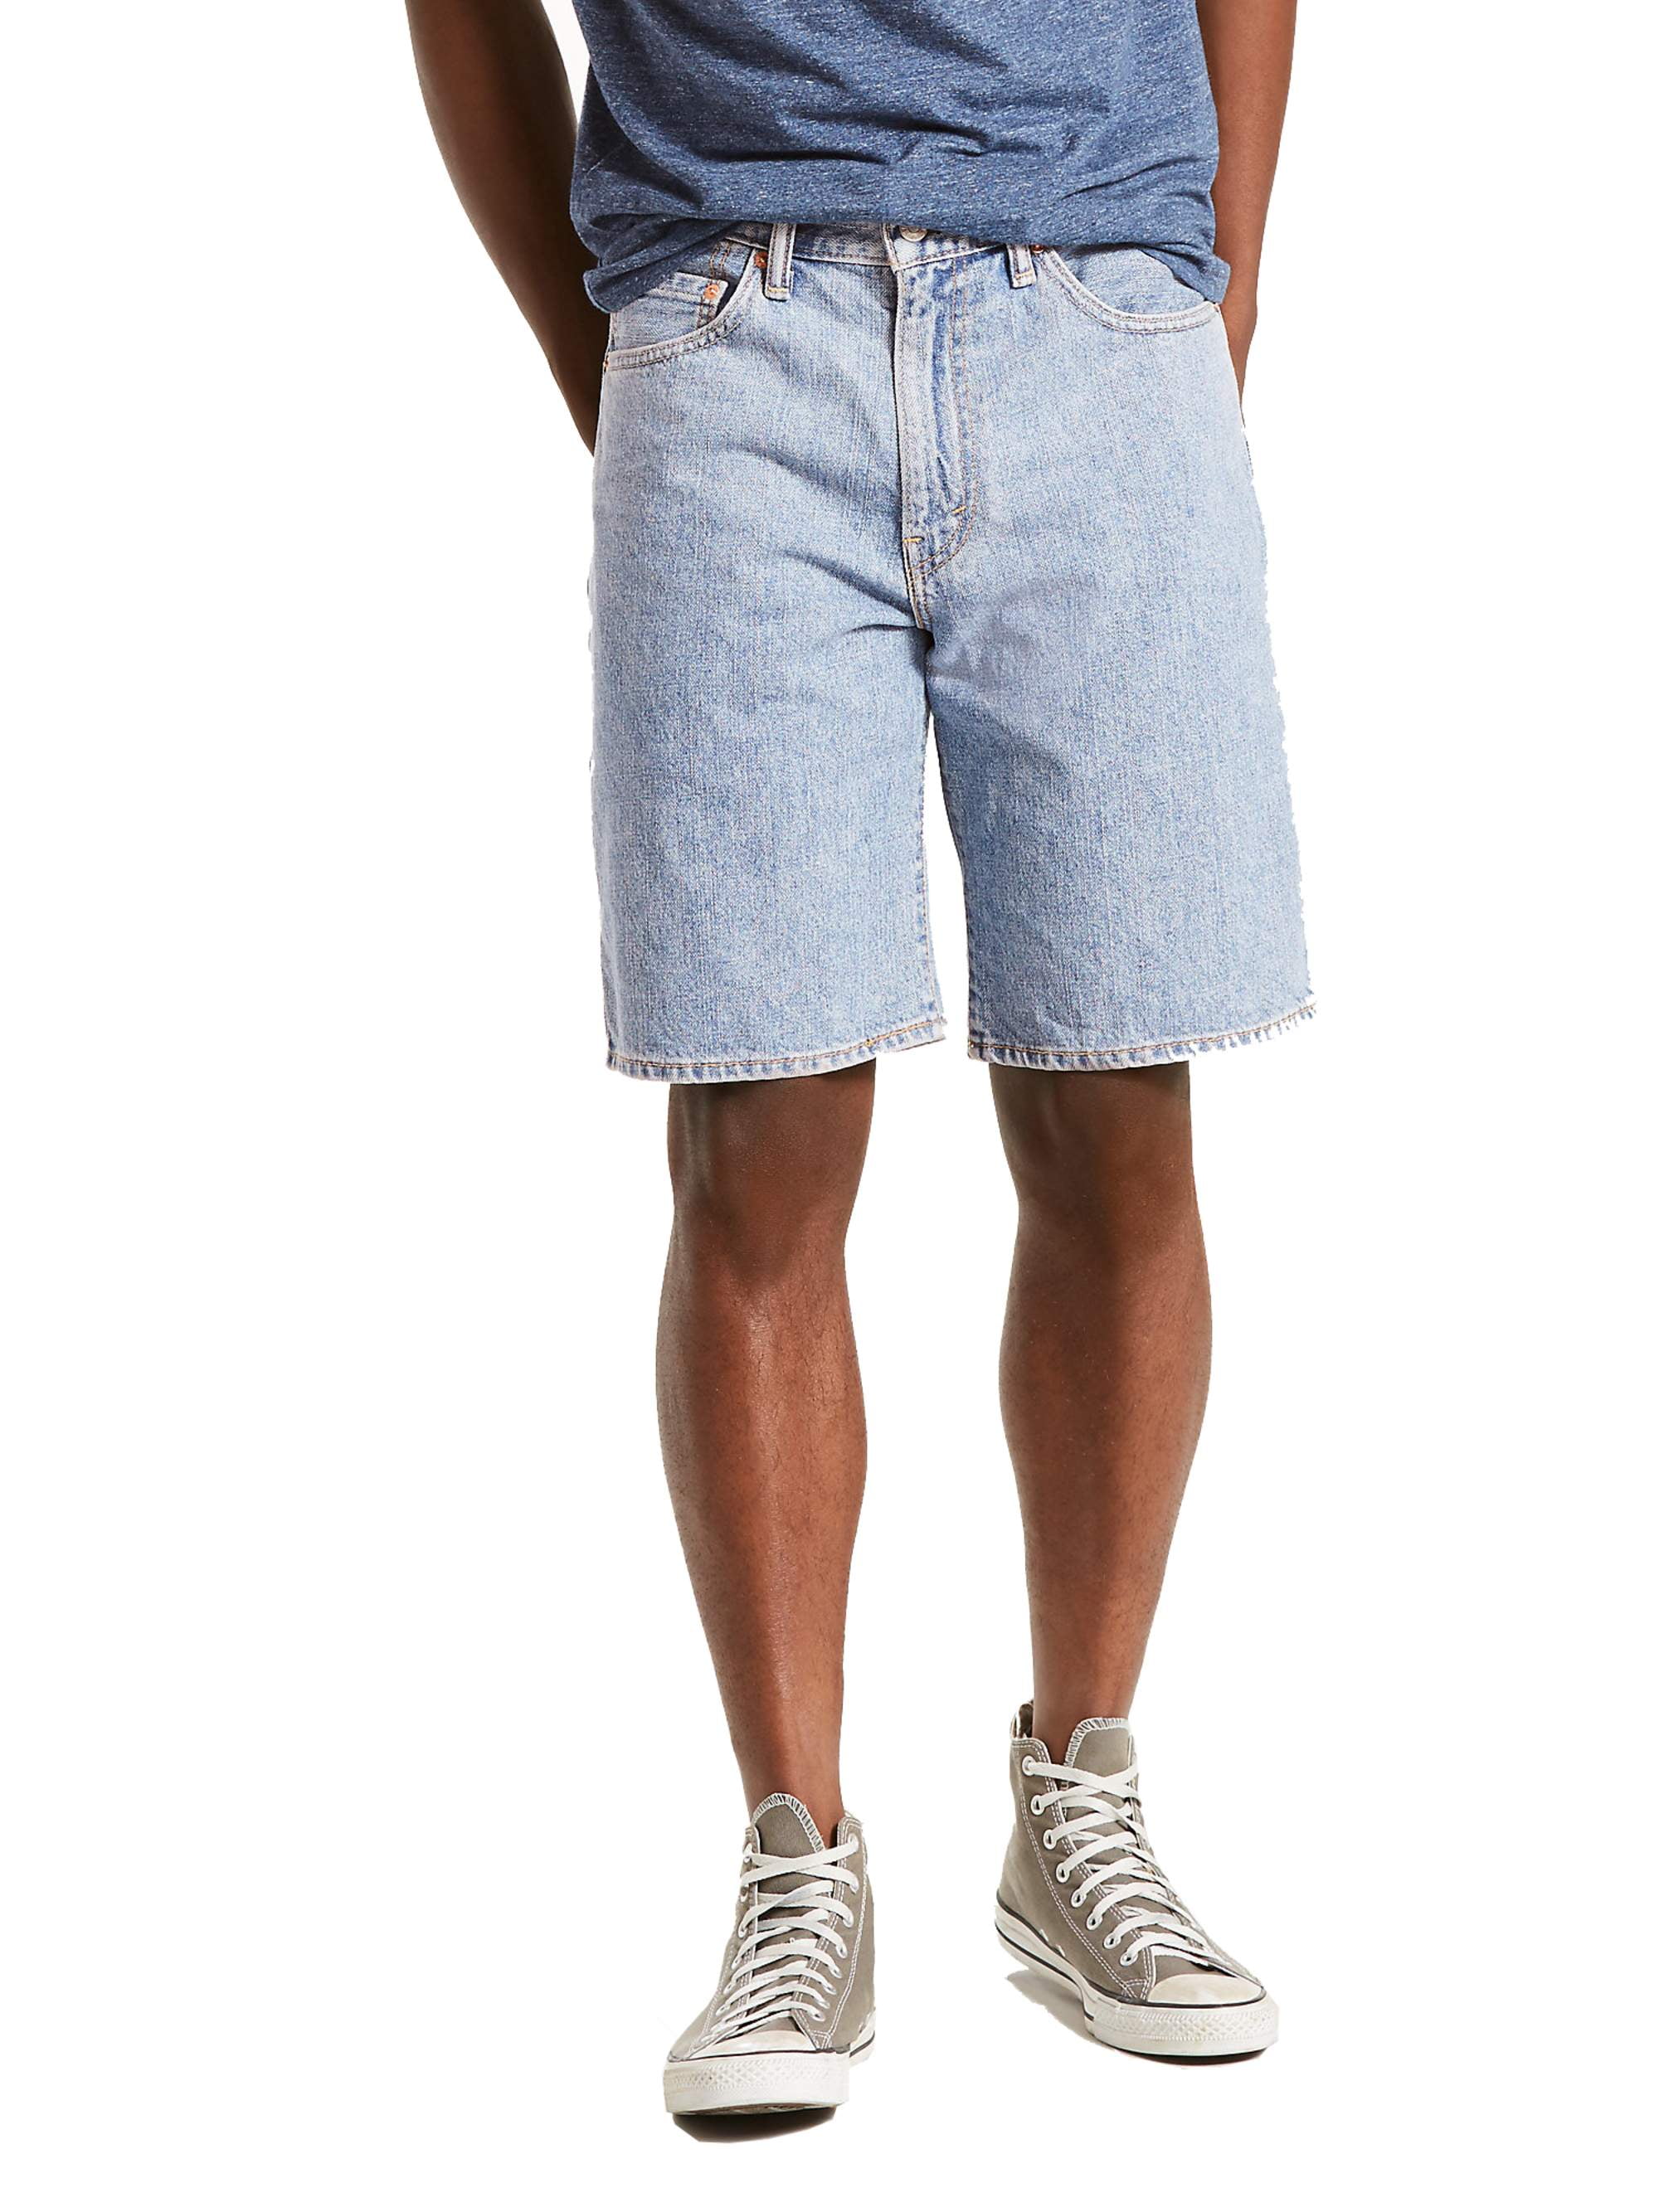 levis 550 mens shorts